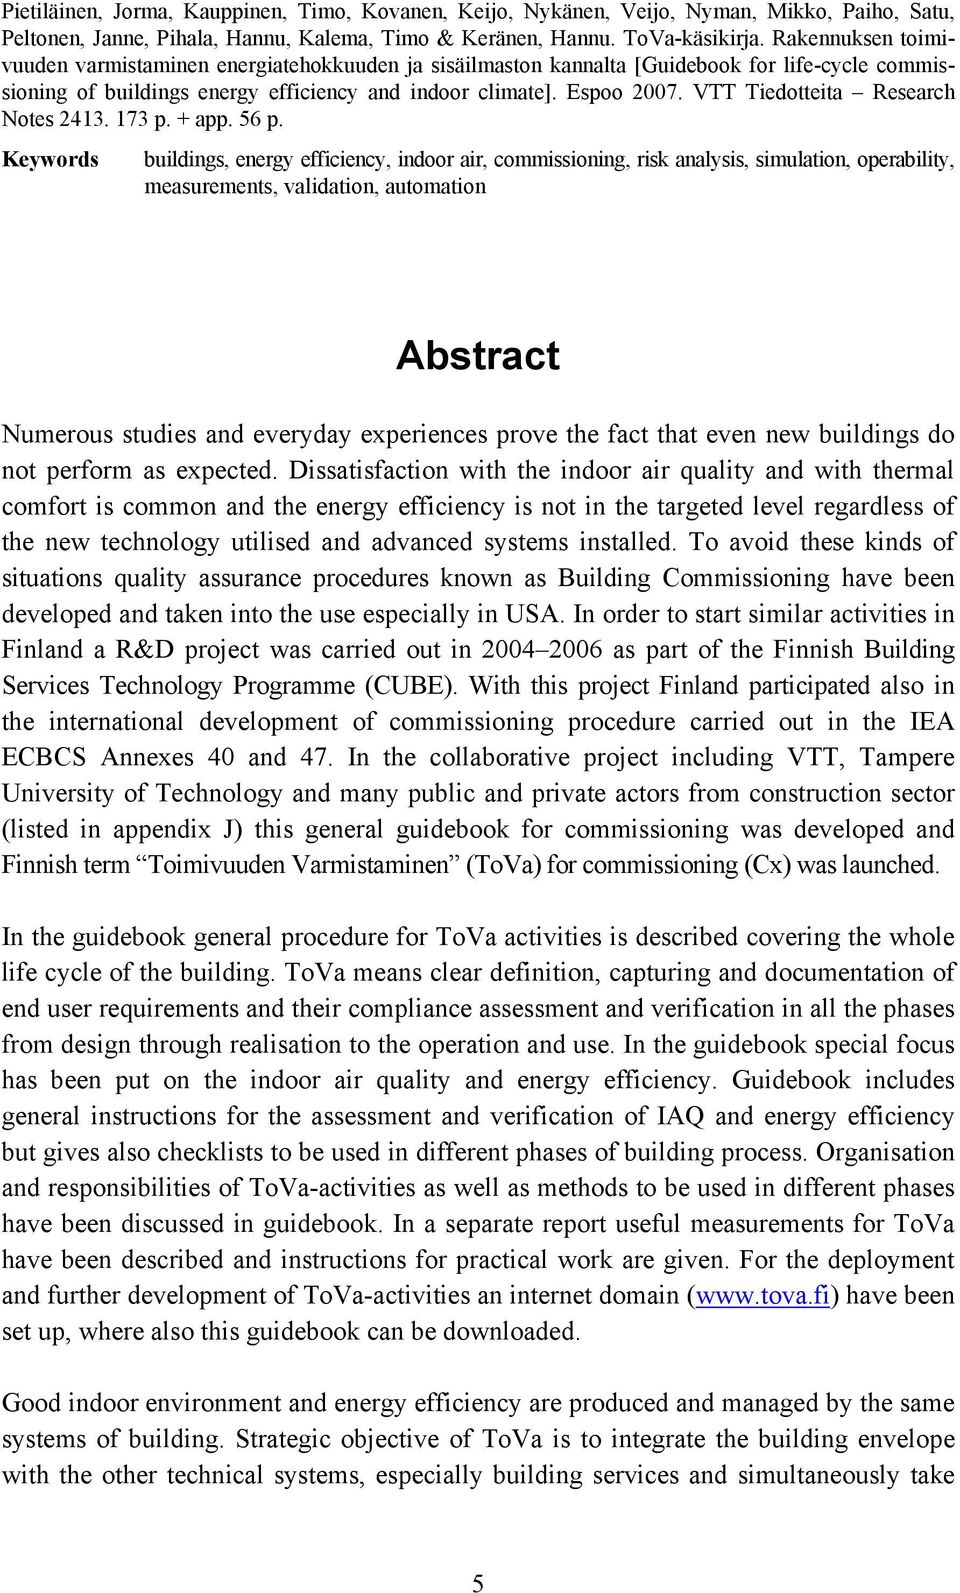 VTT Tiedotteita Research Notes 2413. 173 p. + app. 56 p.